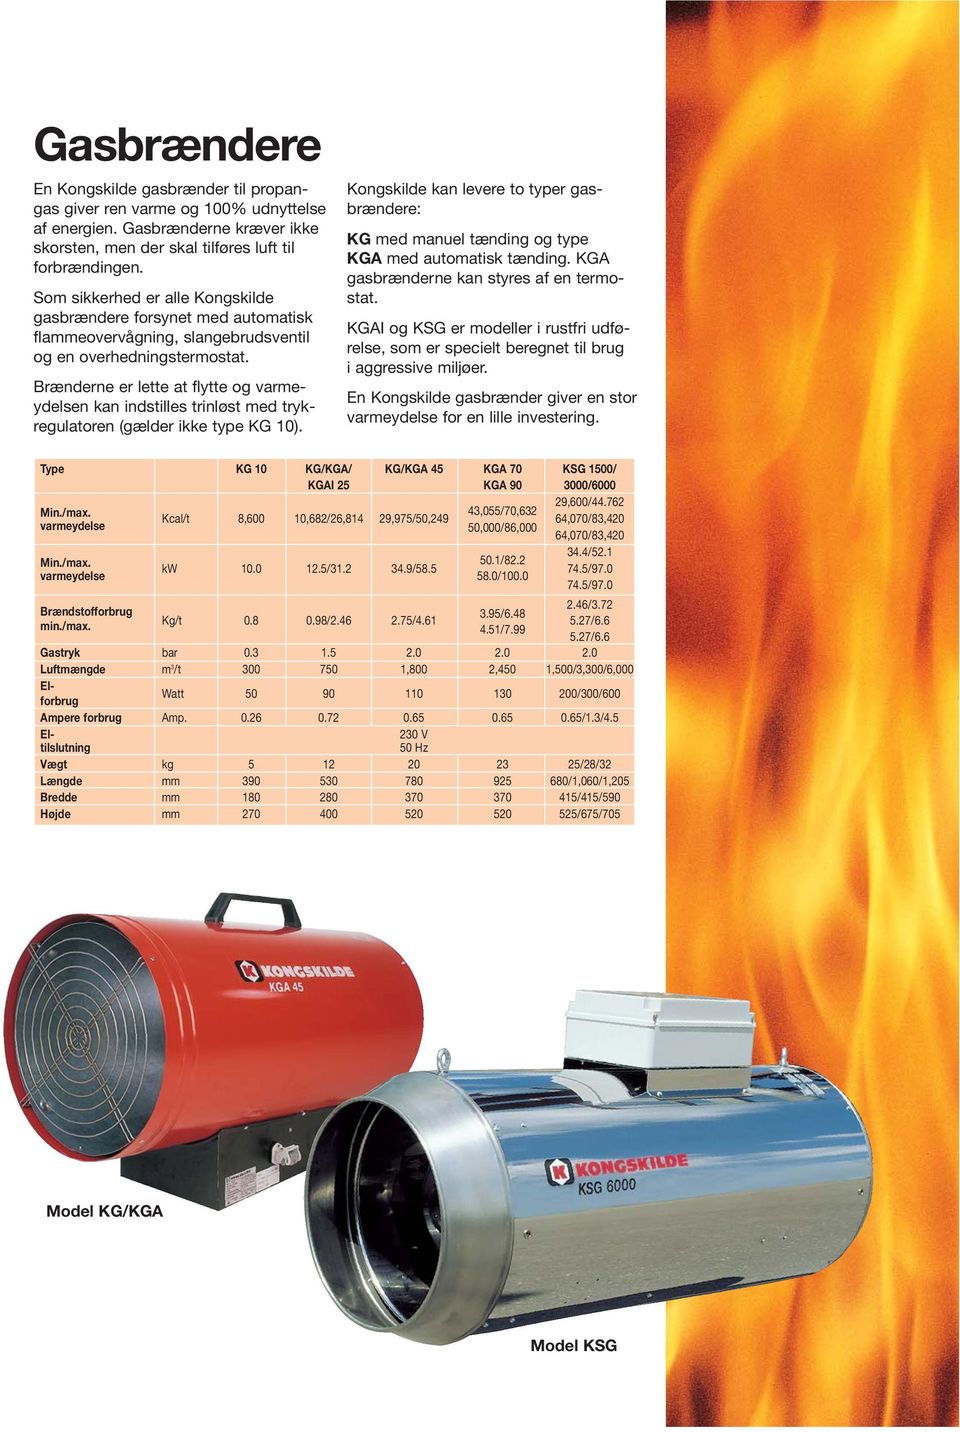 Brænderne er lette at flytte og varmeydelsen kan indstilles trinløst med trykregulatoren (gælder ikke type KG 10).